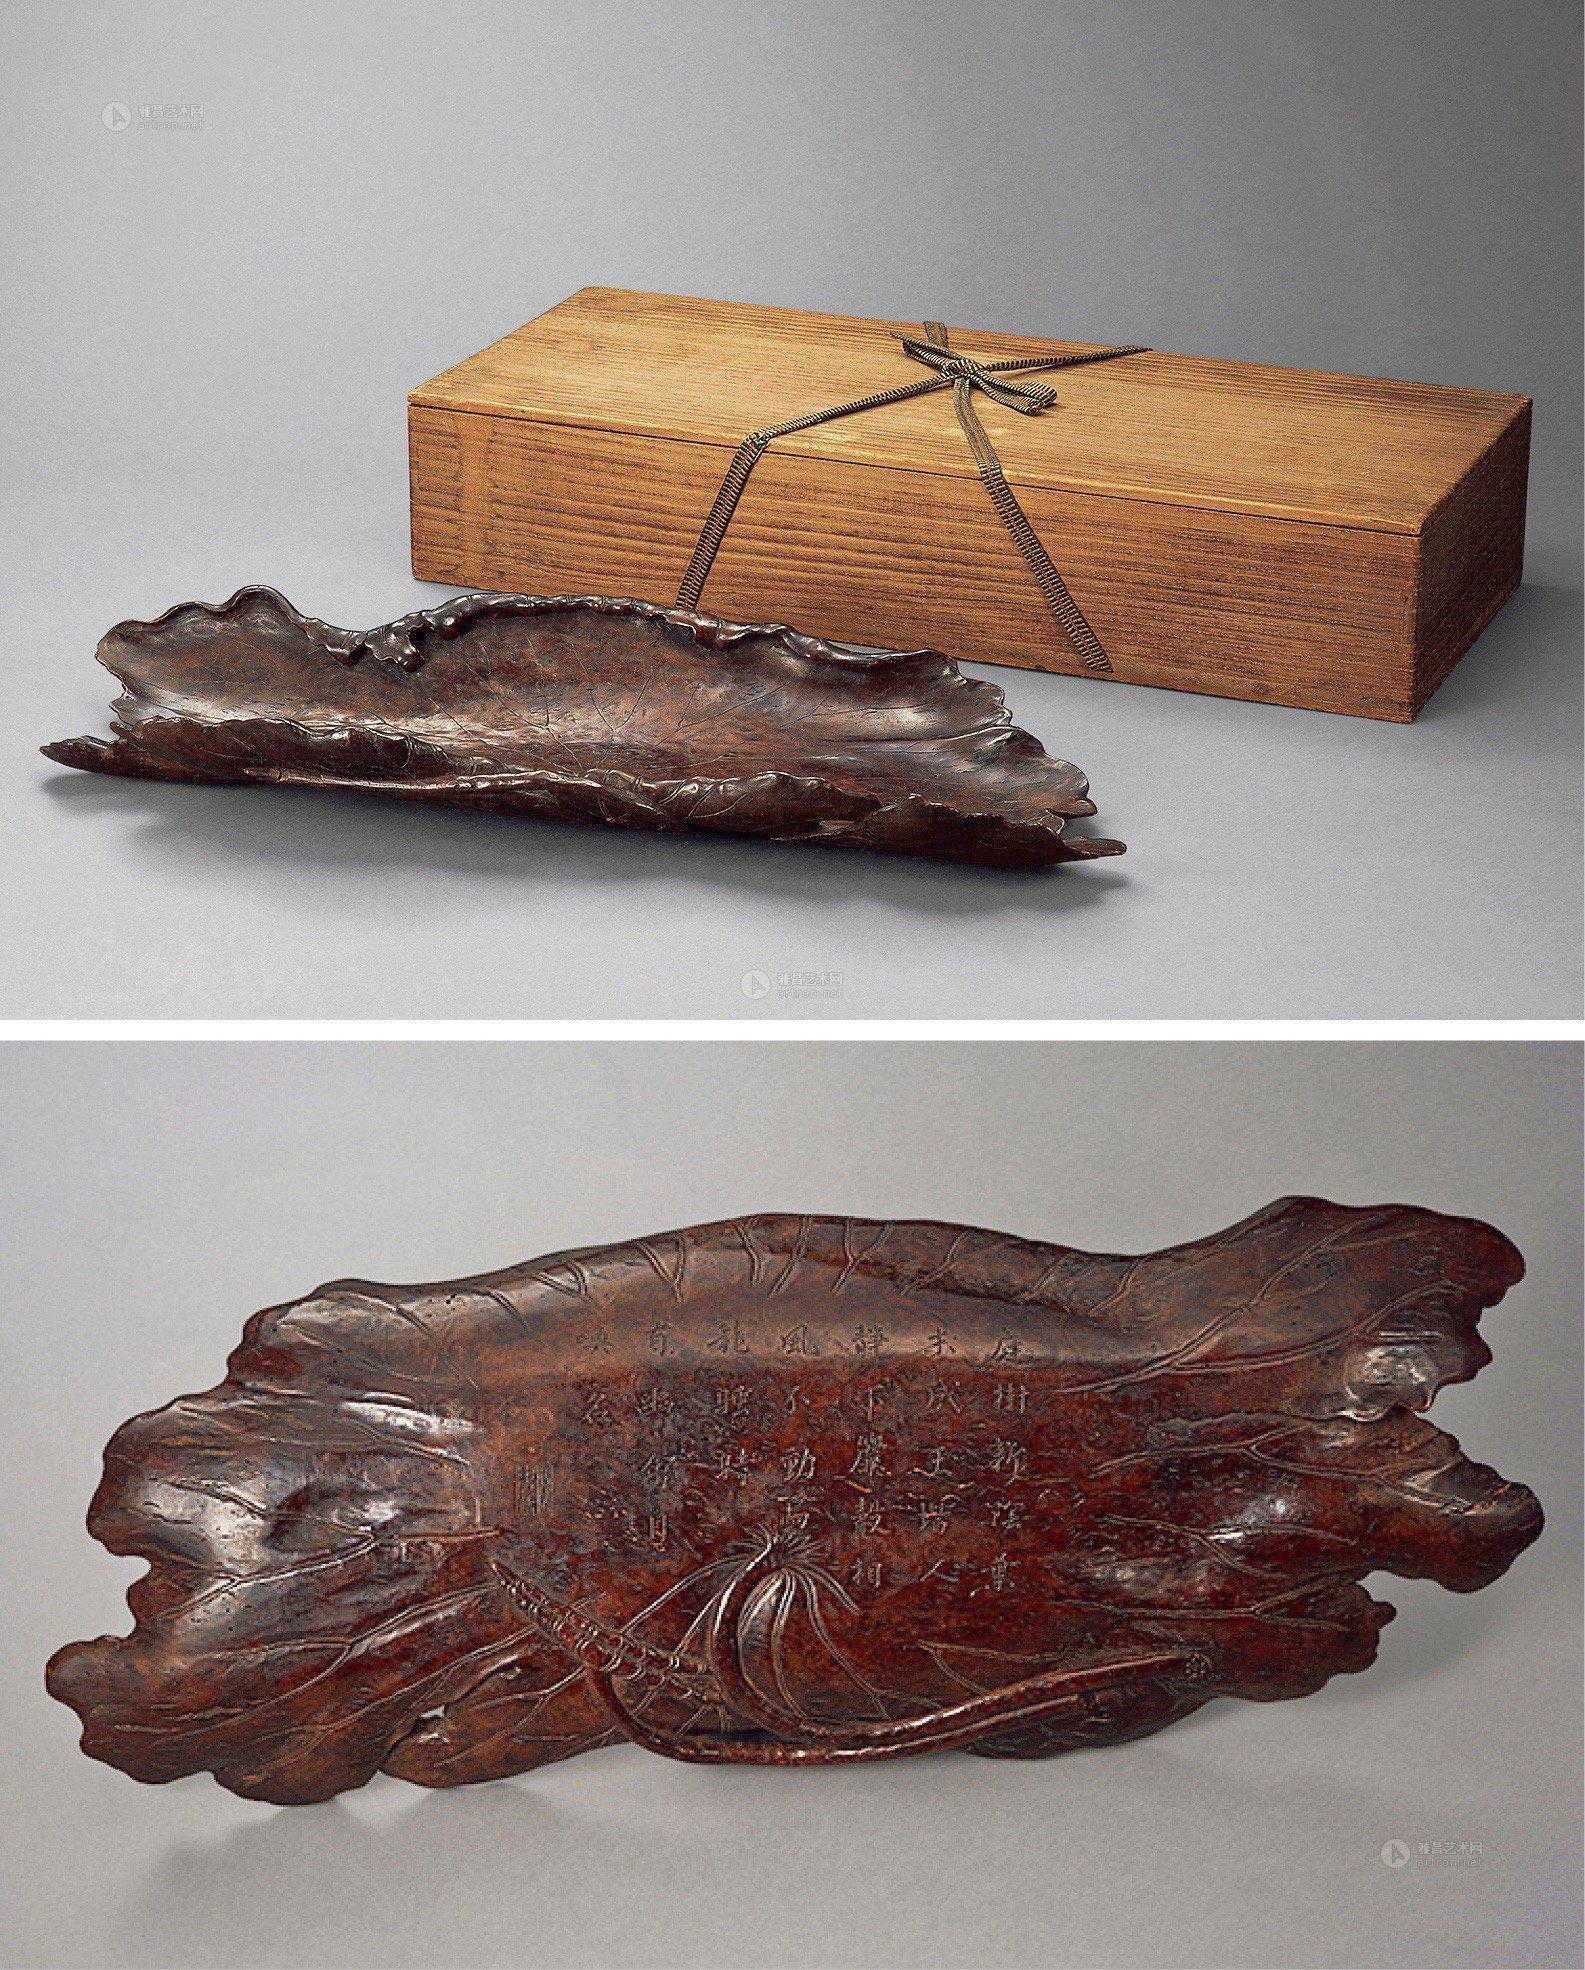 1637 廮木雕莲蓬茶盘